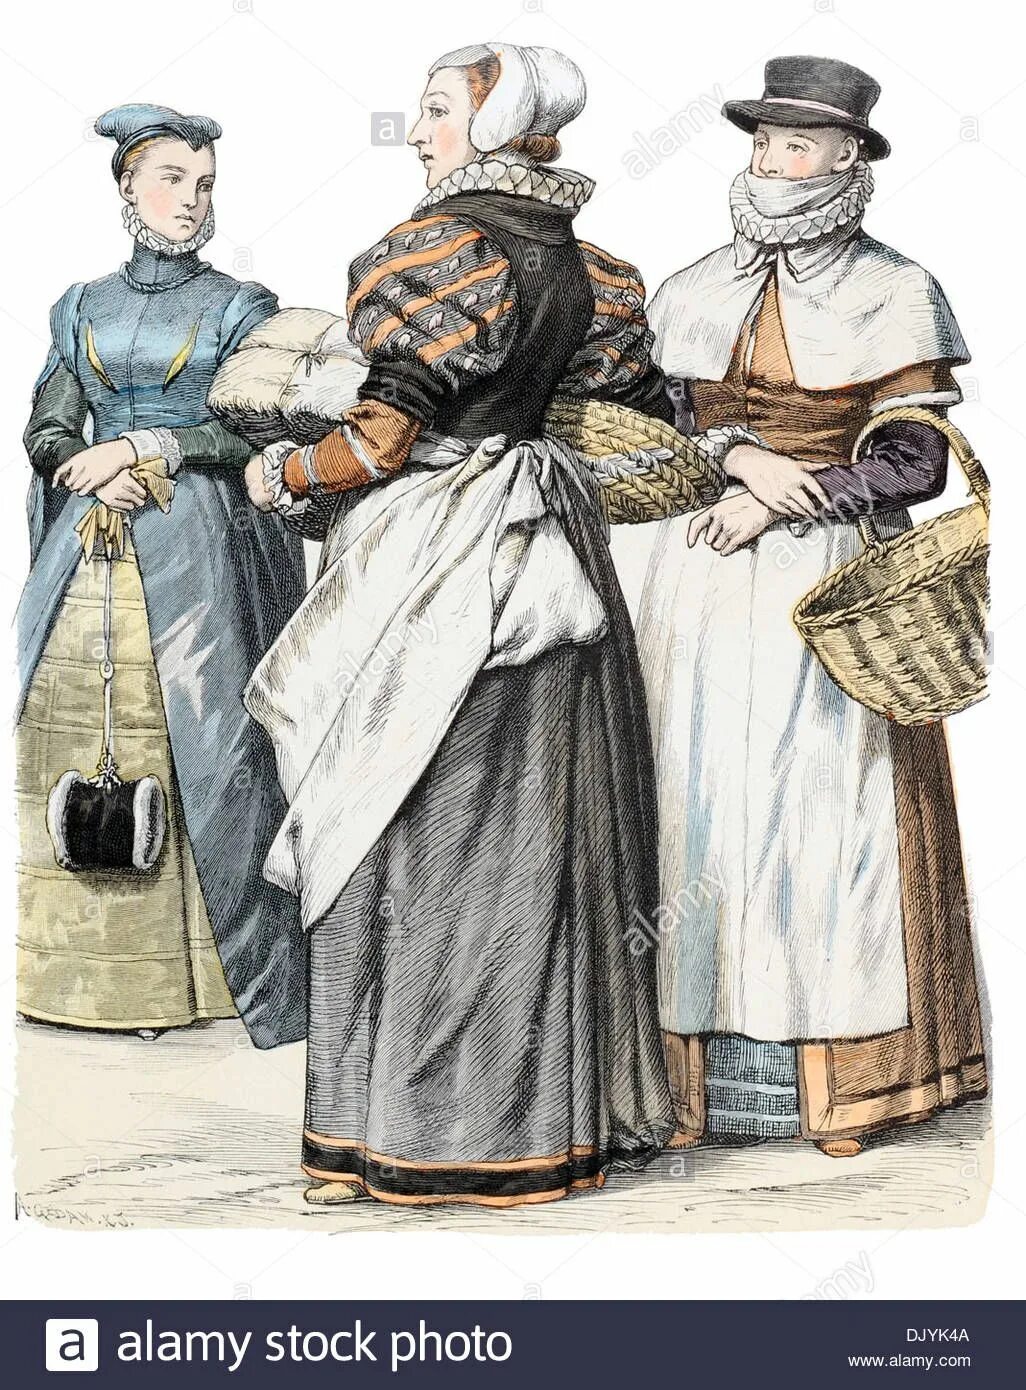 Одежда крестьян в 16 веке. Одежда простолюдинов 17 века в Англии. Одежда простолюдина Англии 16вв. Англия 15 век одежда простолюдинки. Англия 15 век одежда простолюдина.